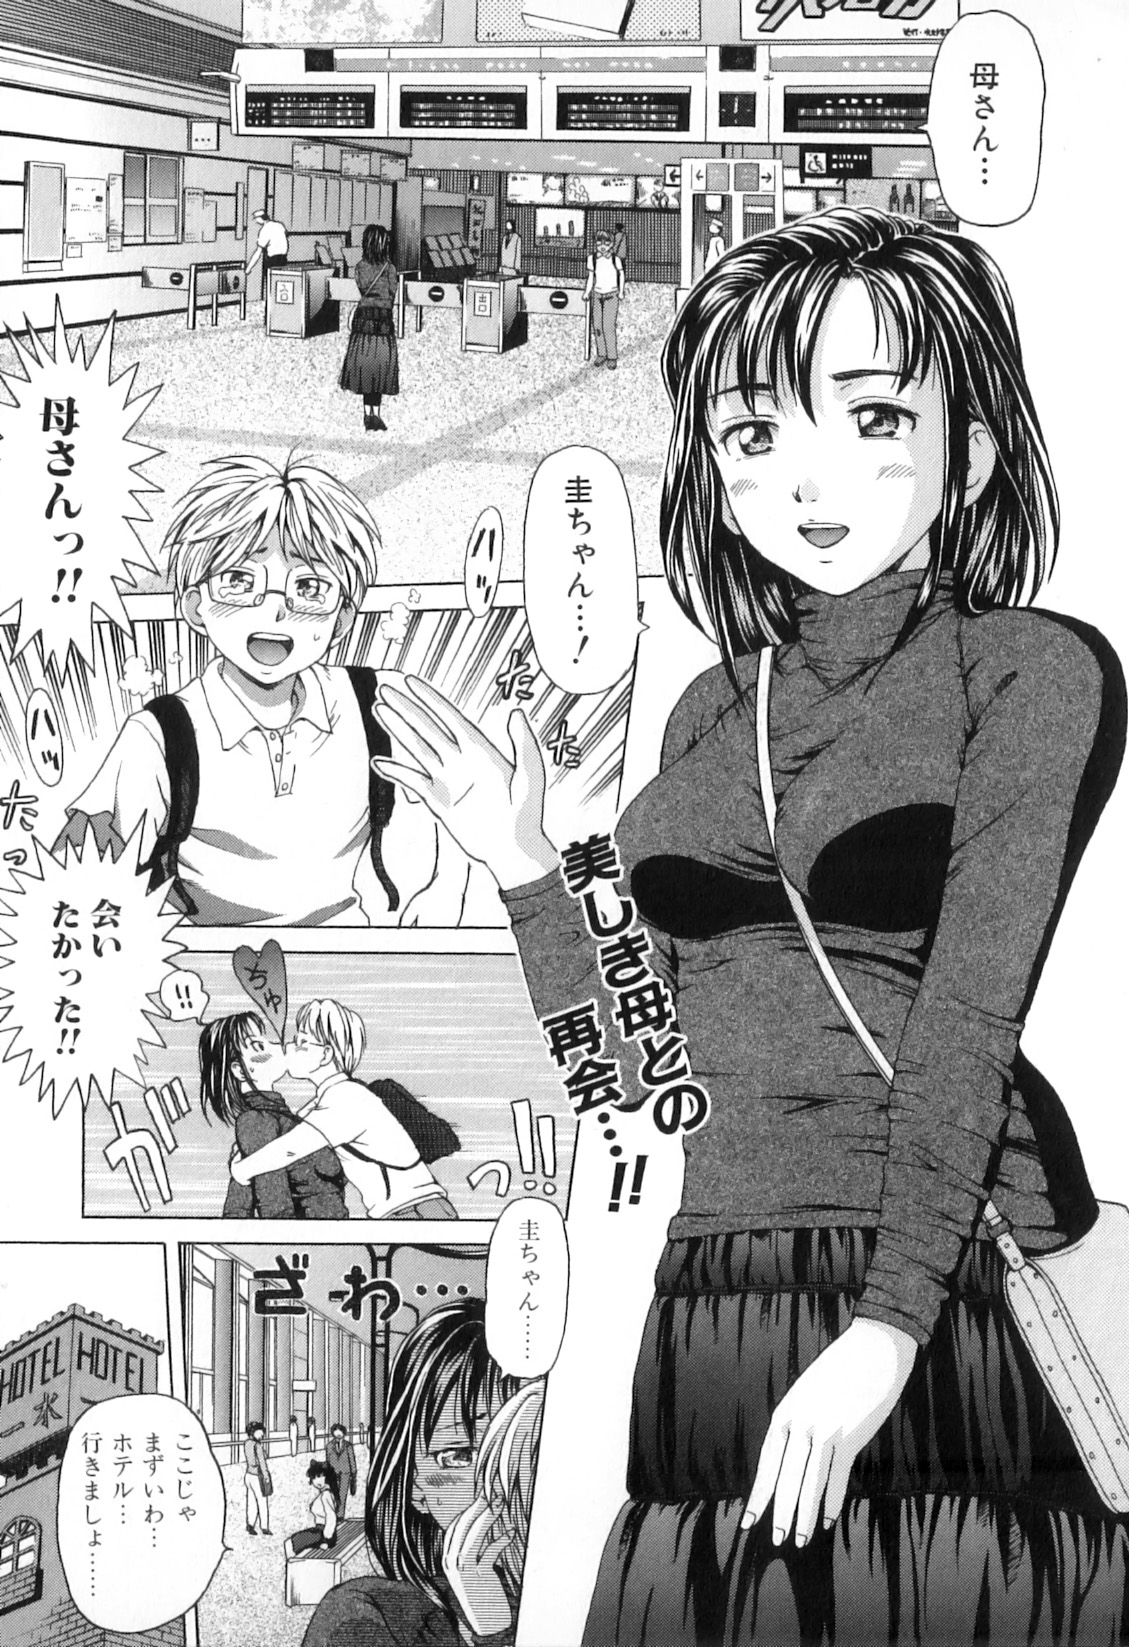 [Anthology] Boshi Chijou Kitan 2 page 23 full